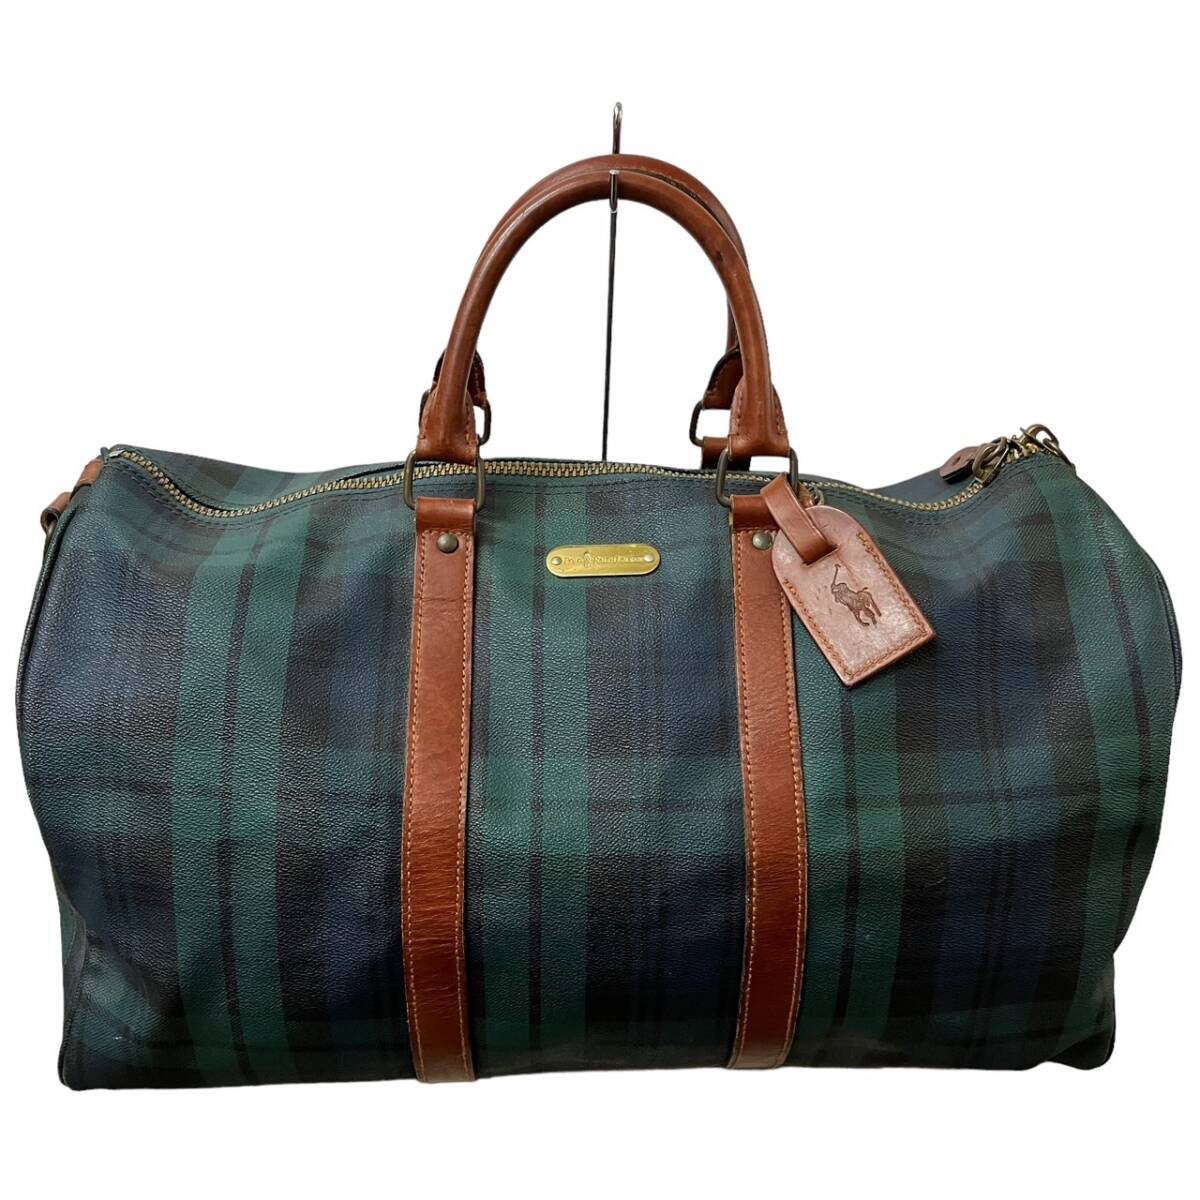 1 иен Ralph Lauren в клетку сумка "Boston bag" PVC/ кожа оттенок зеленого * ремешок иметь 